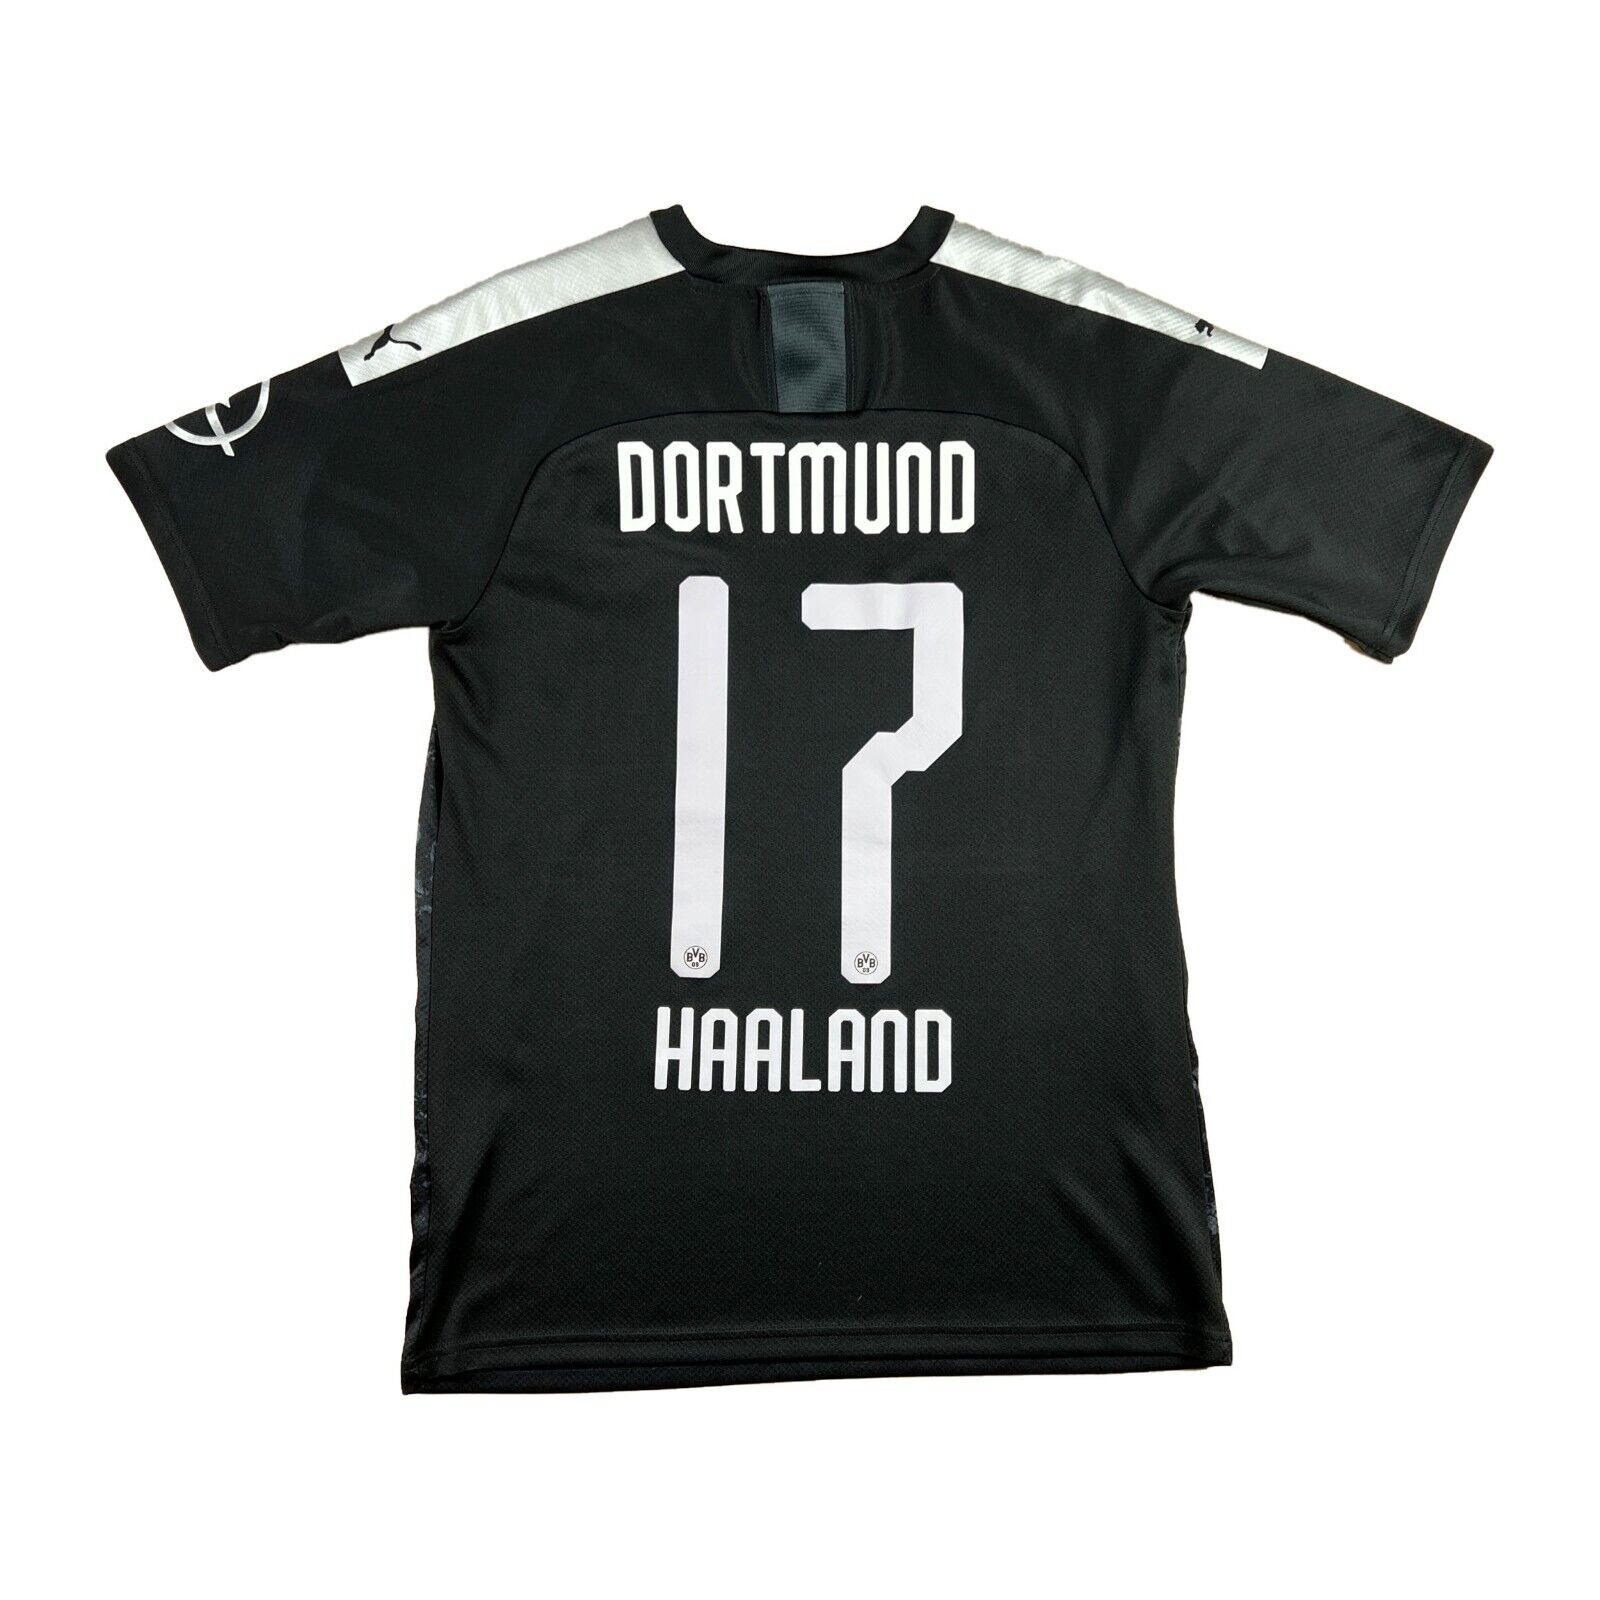 Borussia Dortmund 2019-20 "Haaland" Auswrts Trikot "S" puma "EVONIK" BVB shirt